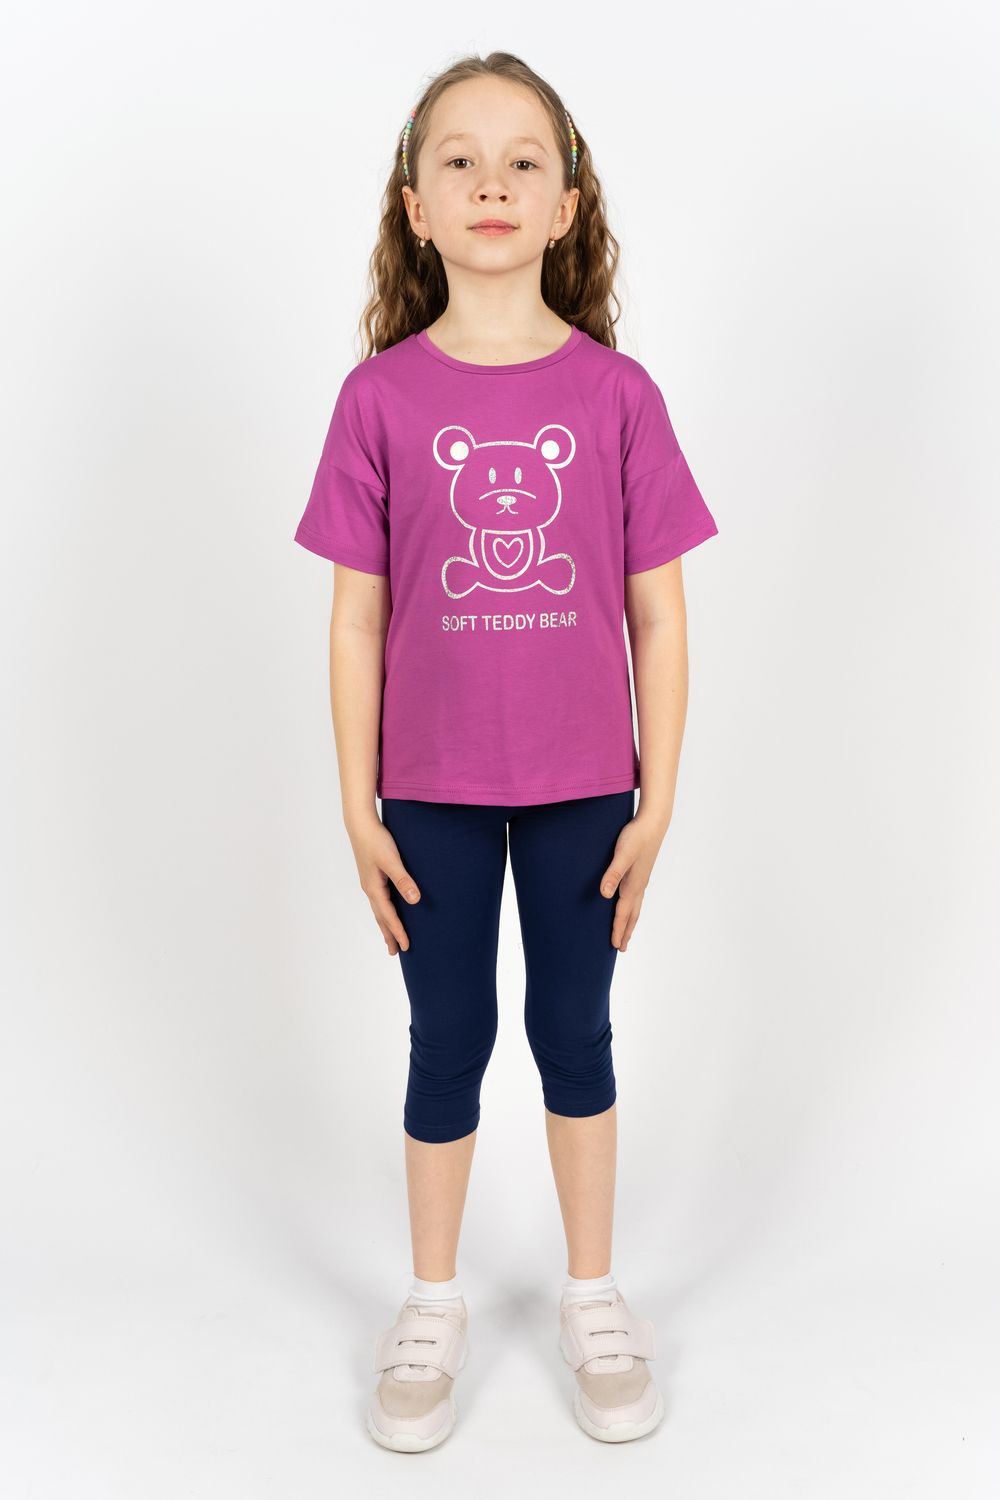 Комплект для девочки 41104 (футболка+бриджи) - ягодный/синий